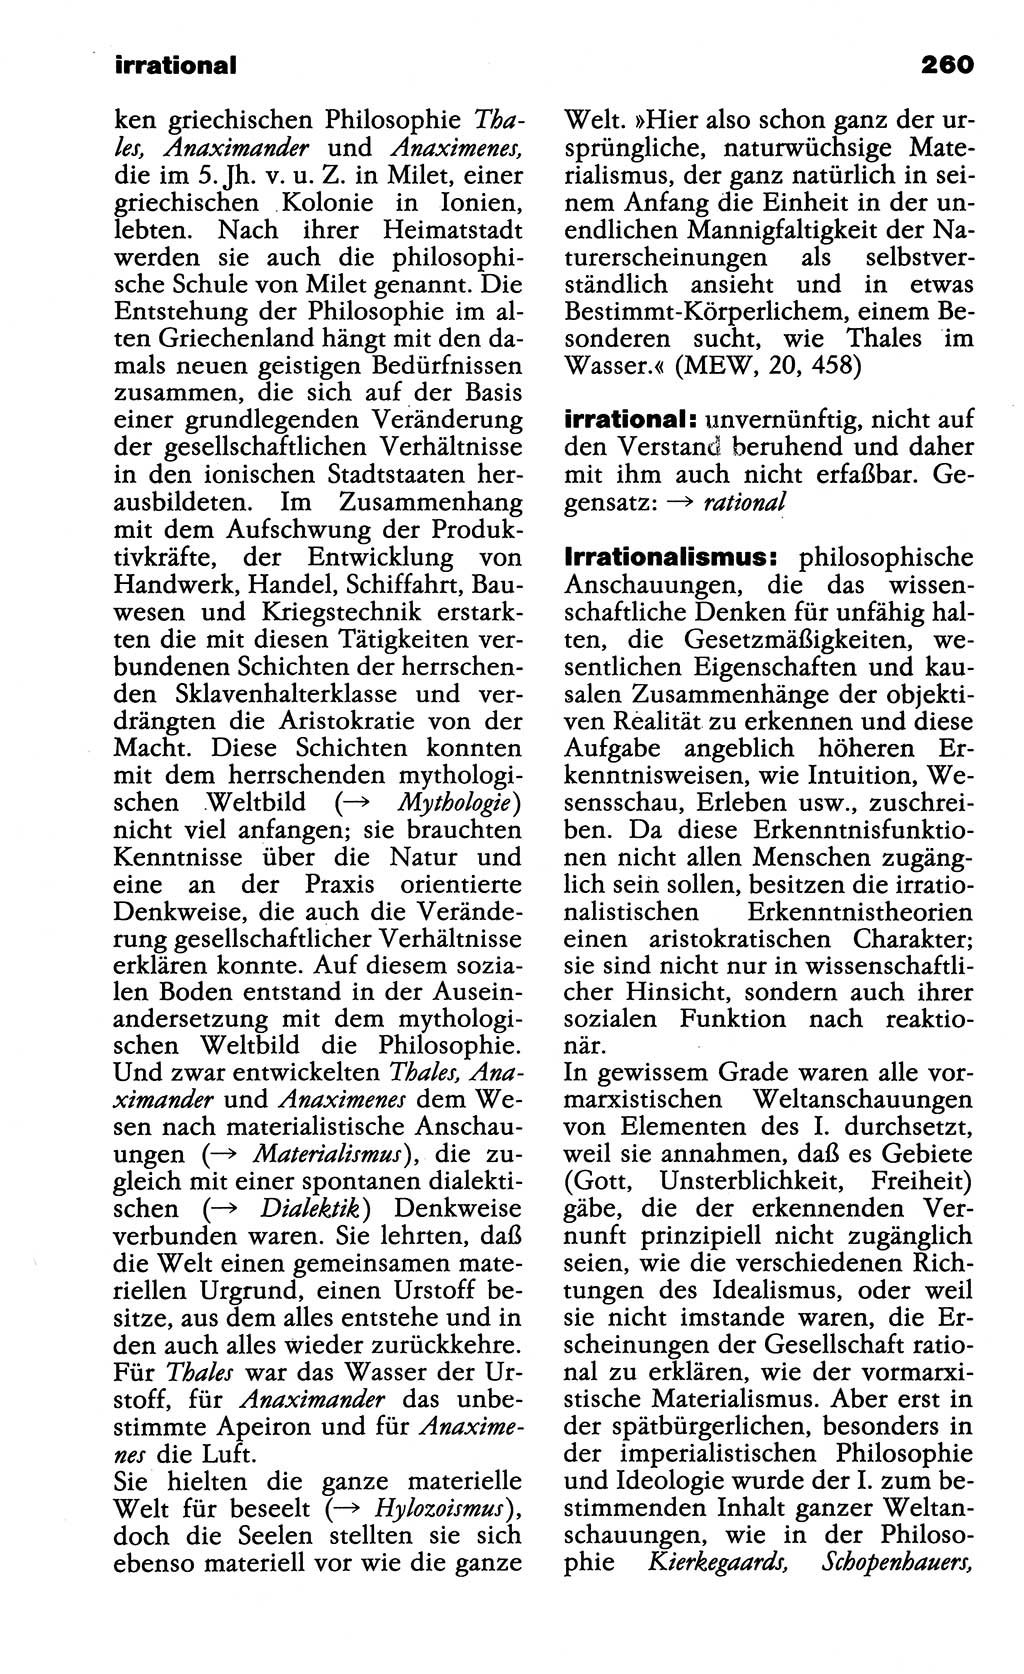 Wörterbuch der marxistisch-leninistischen Philosophie [Deutsche Demokratische Republik (DDR)] 1985, Seite 260 (Wb. ML Phil. DDR 1985, S. 260)